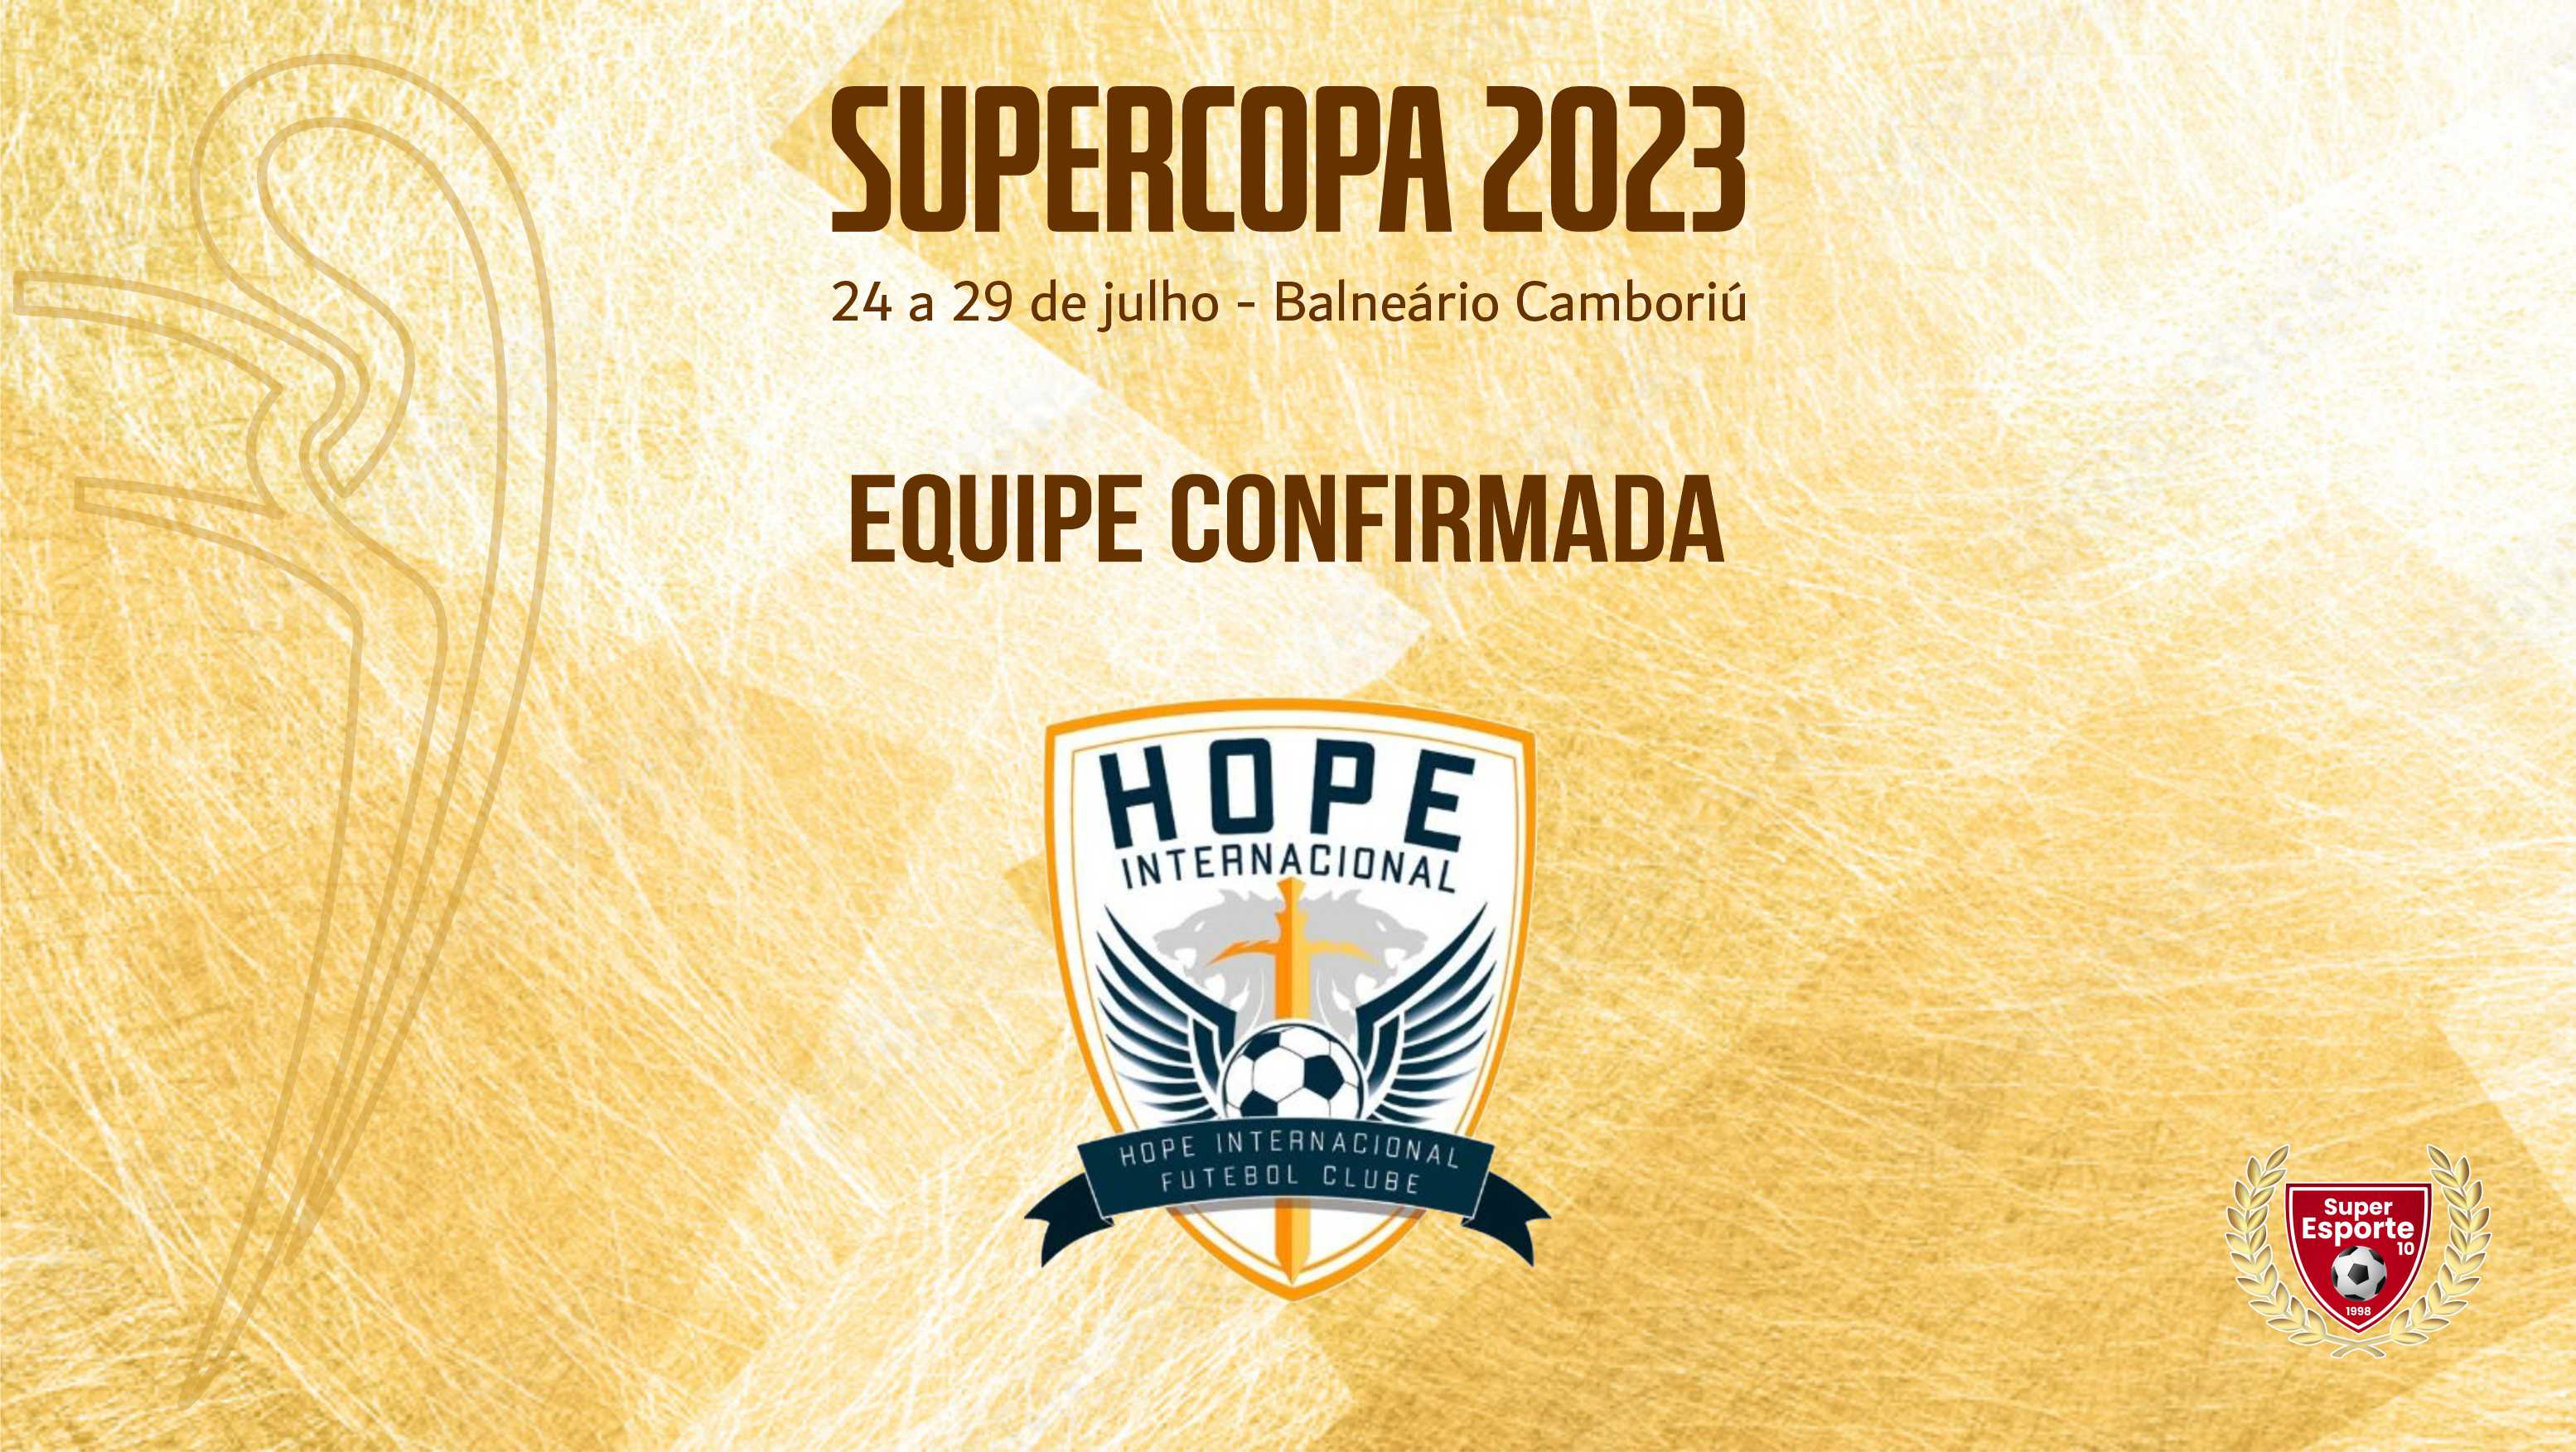 Supercopa também terá o Hope Internacional